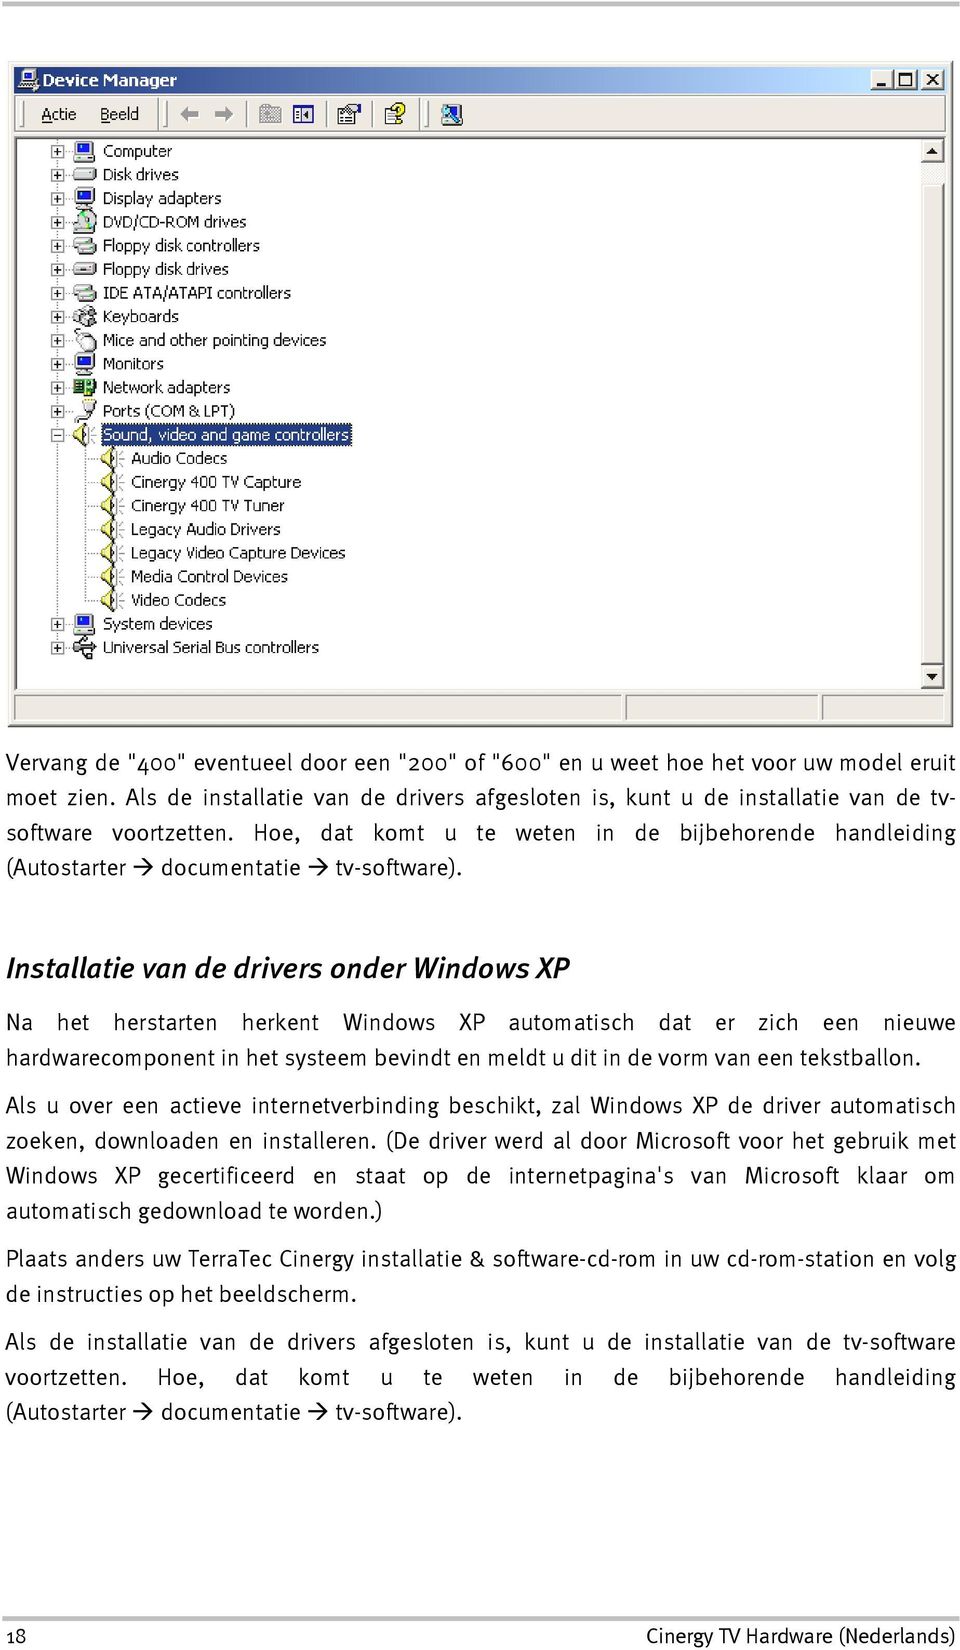 Installatie van de drivers onder Windows XP Na het herstarten herkent Windows XP automatisch dat er zich een nieuwe hardwarecomponent in het systeem bevindt en meldt u dit in de vorm van een